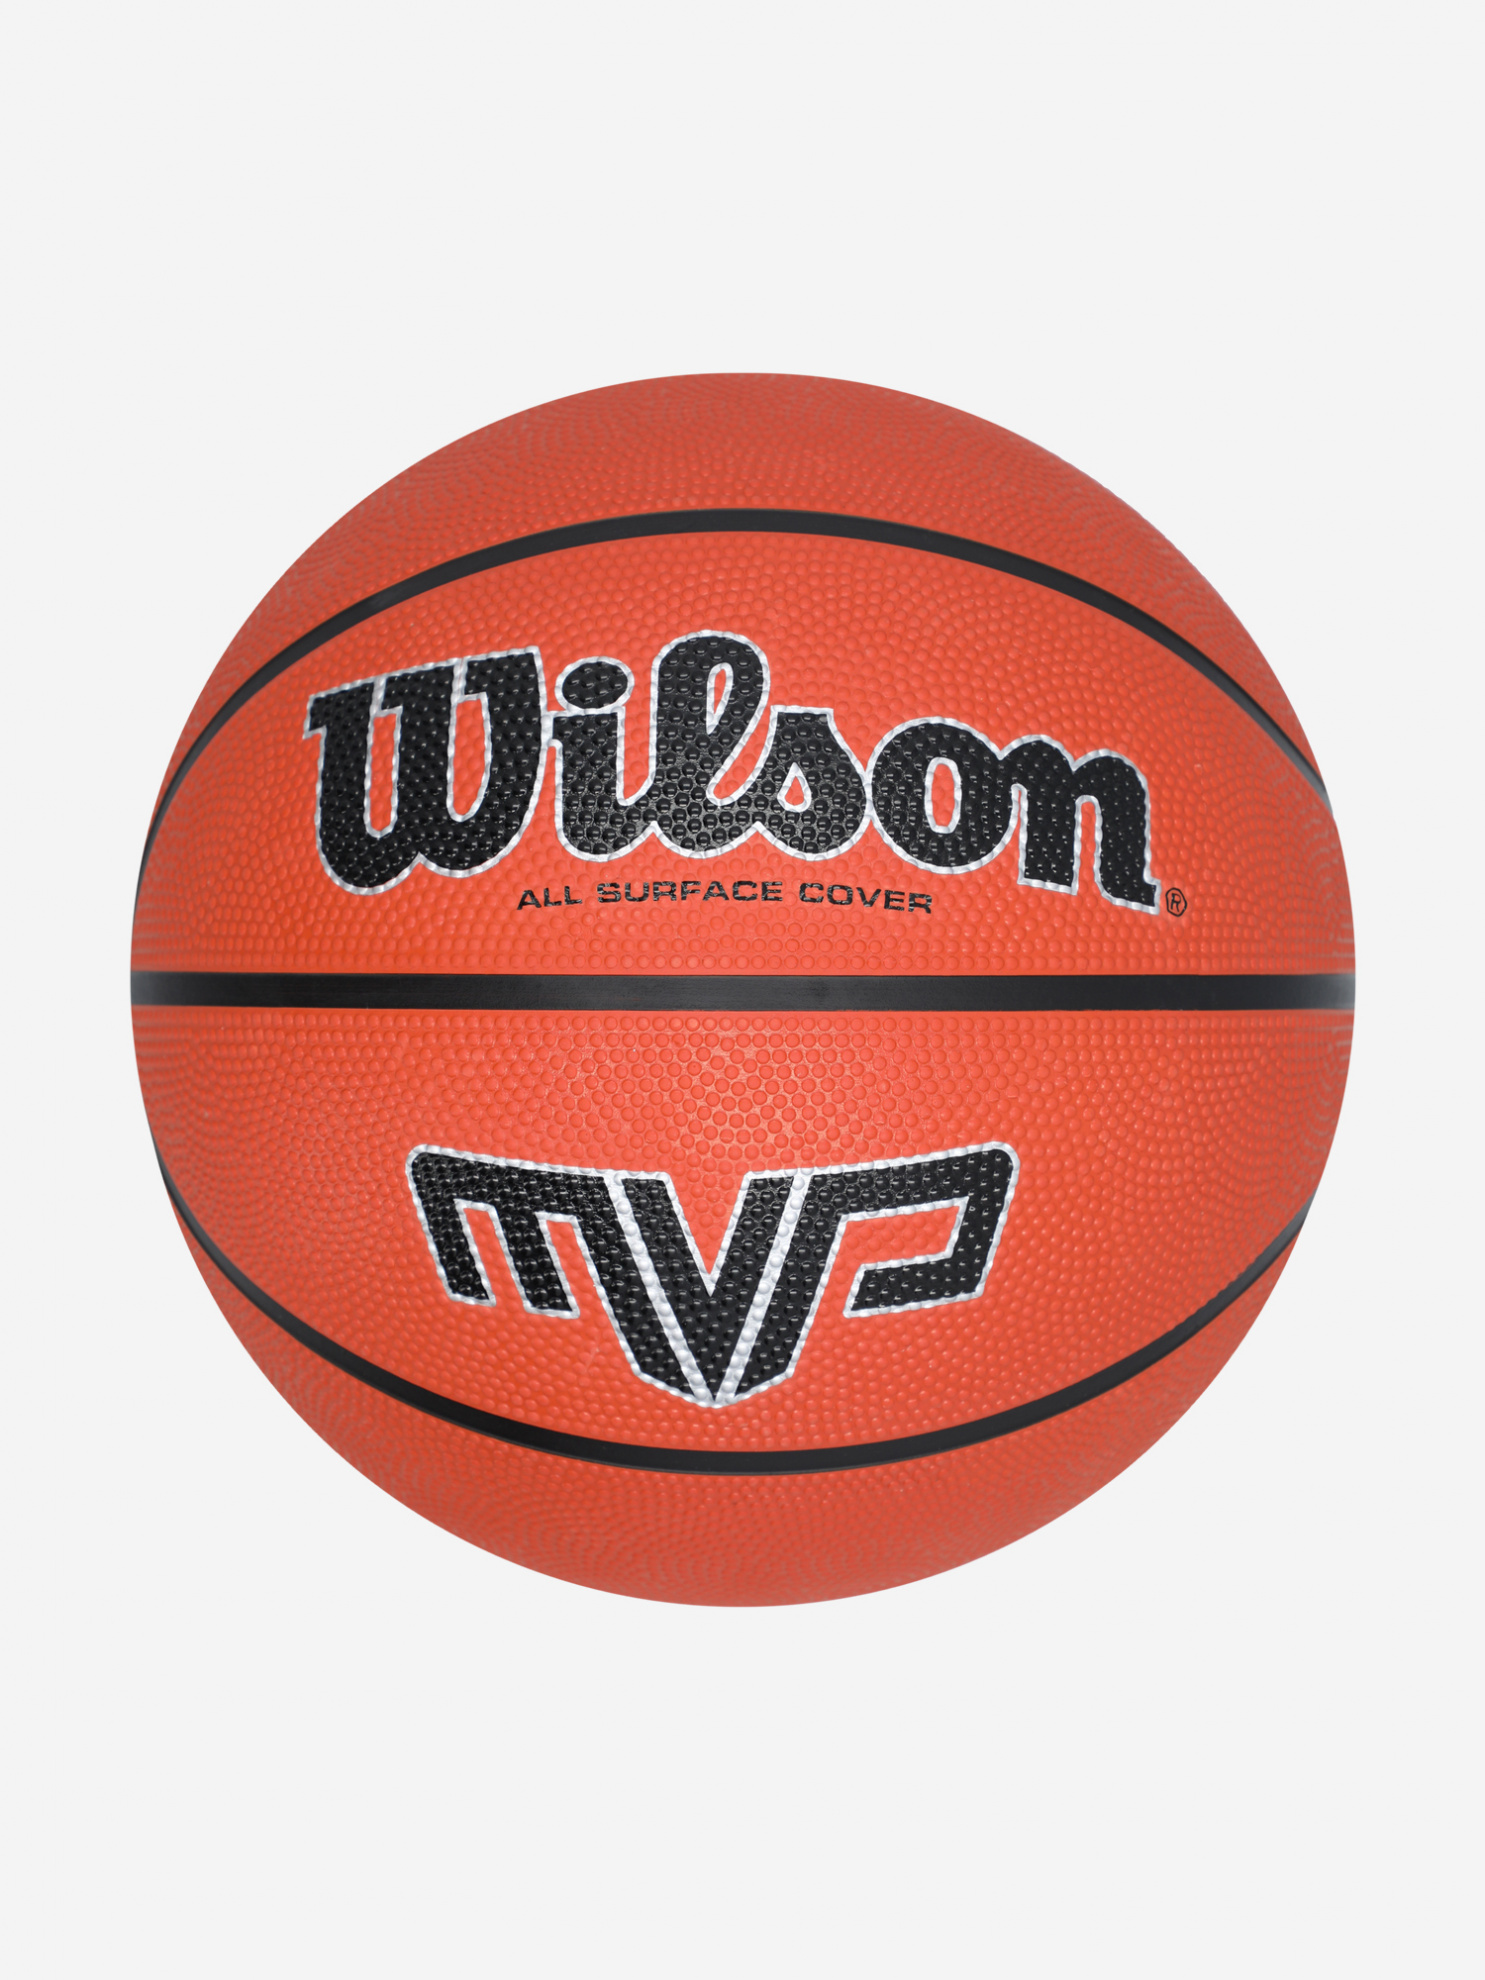 Wilson MVP 295 BSKT  разм.7 из каталога баскетбольных мячей в Москве по цене 1790 ₽